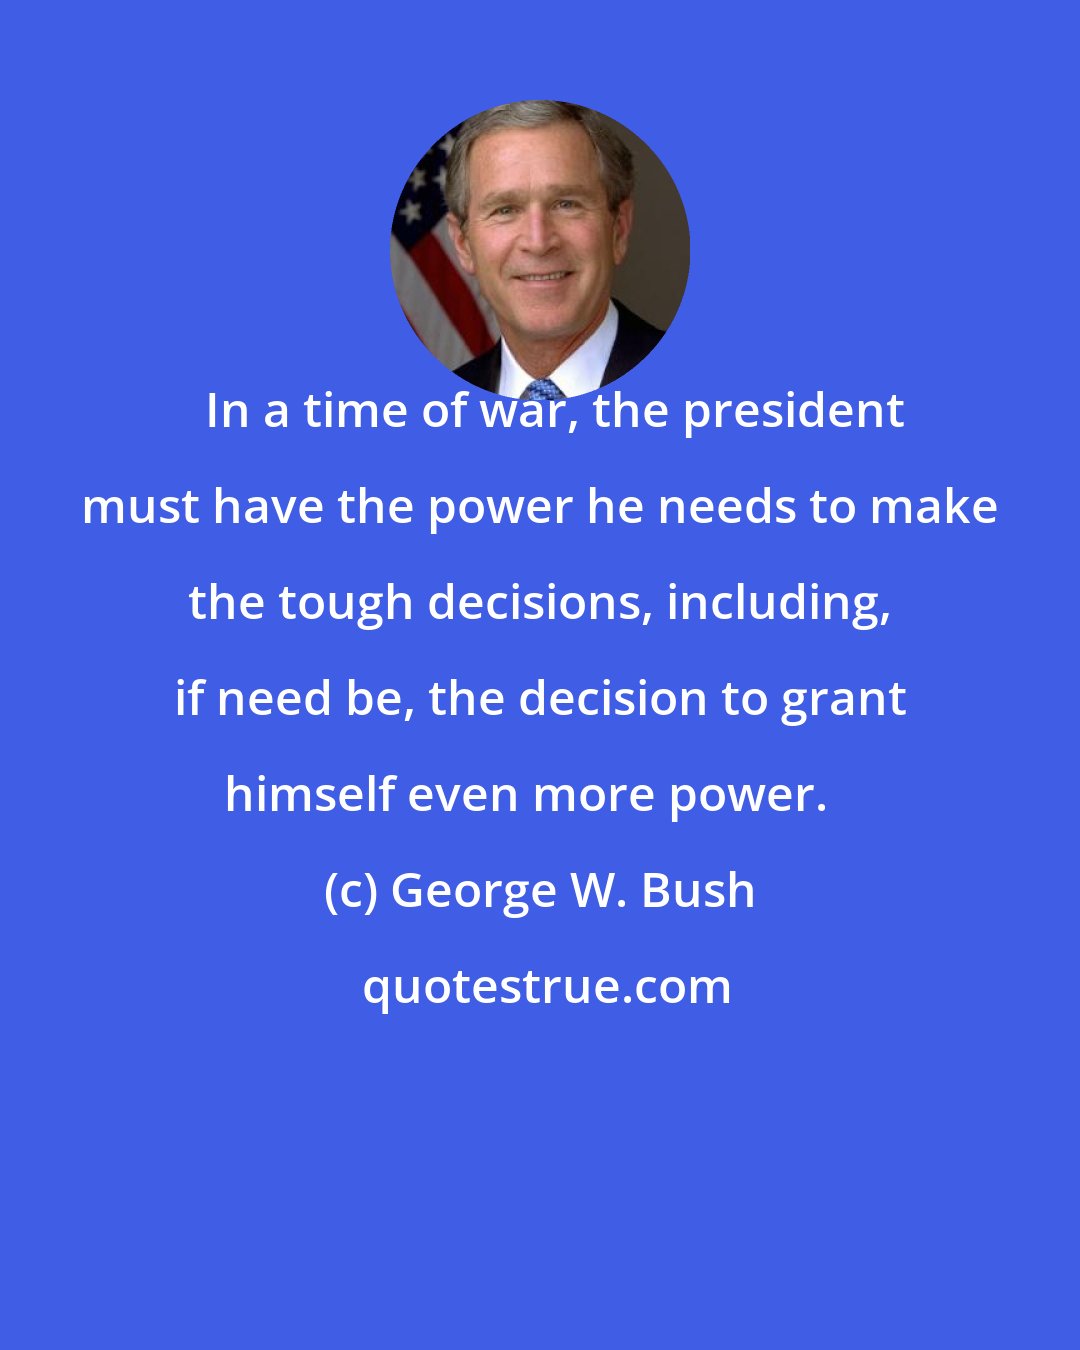 George W. Bush: In a time of war, the president must have the power he needs to make the tough decisions, including, if need be, the decision to grant himself even more power.